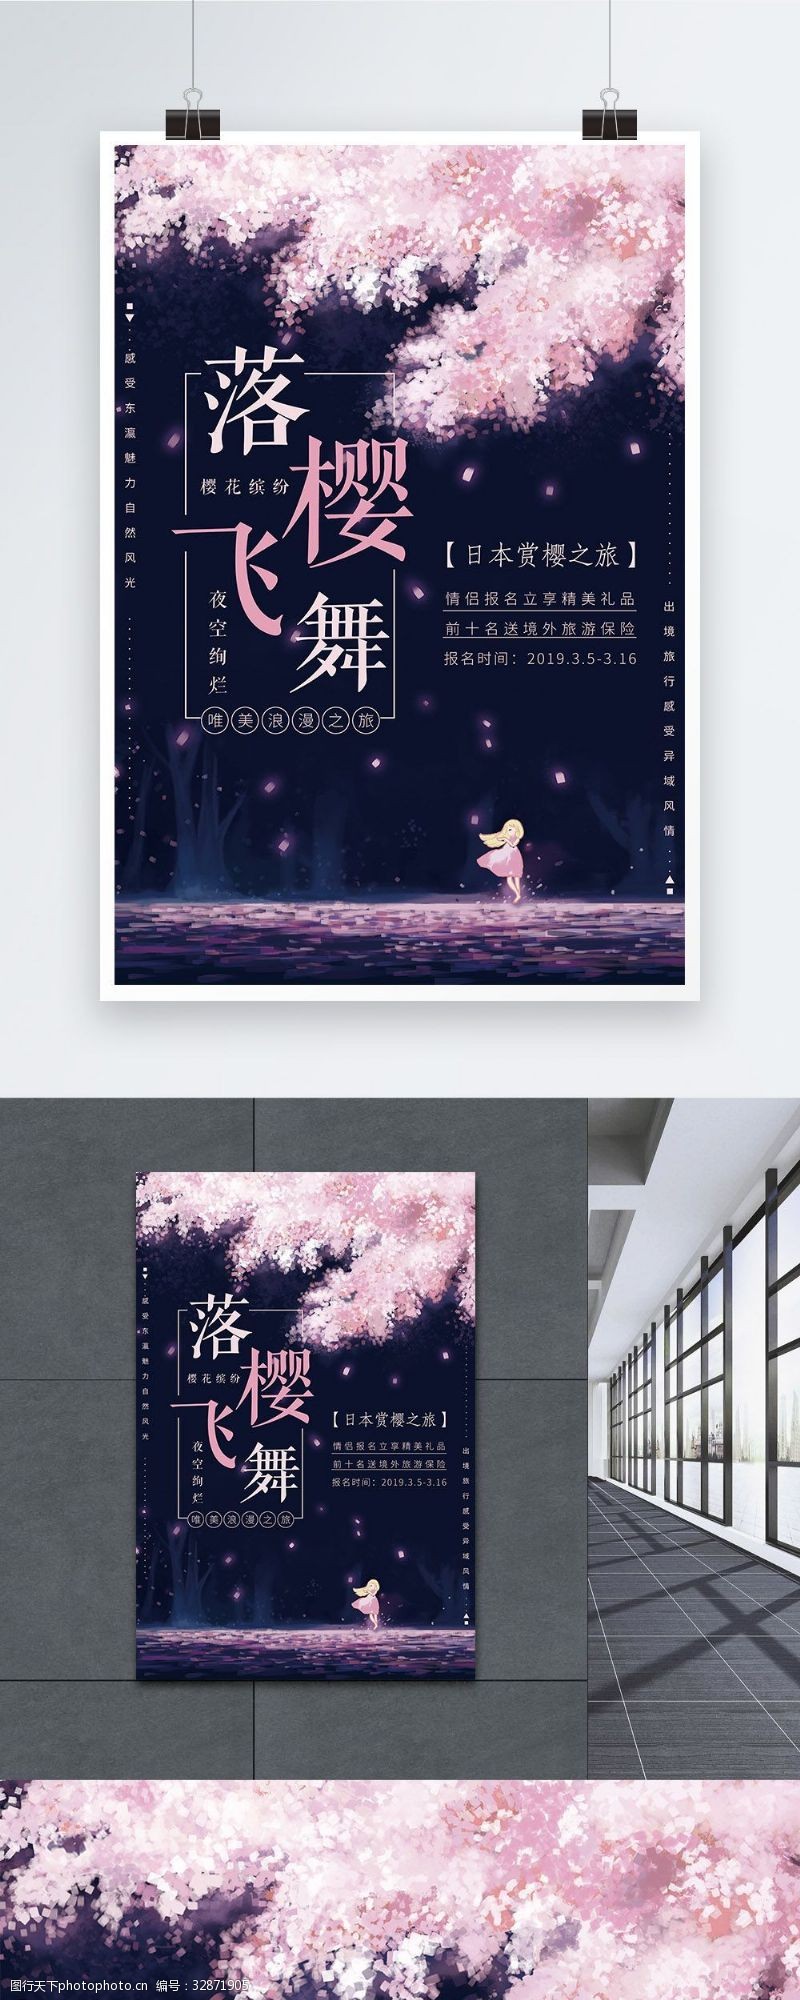 日本之旅浪漫夜空落樱飞舞樱花节旅游海报